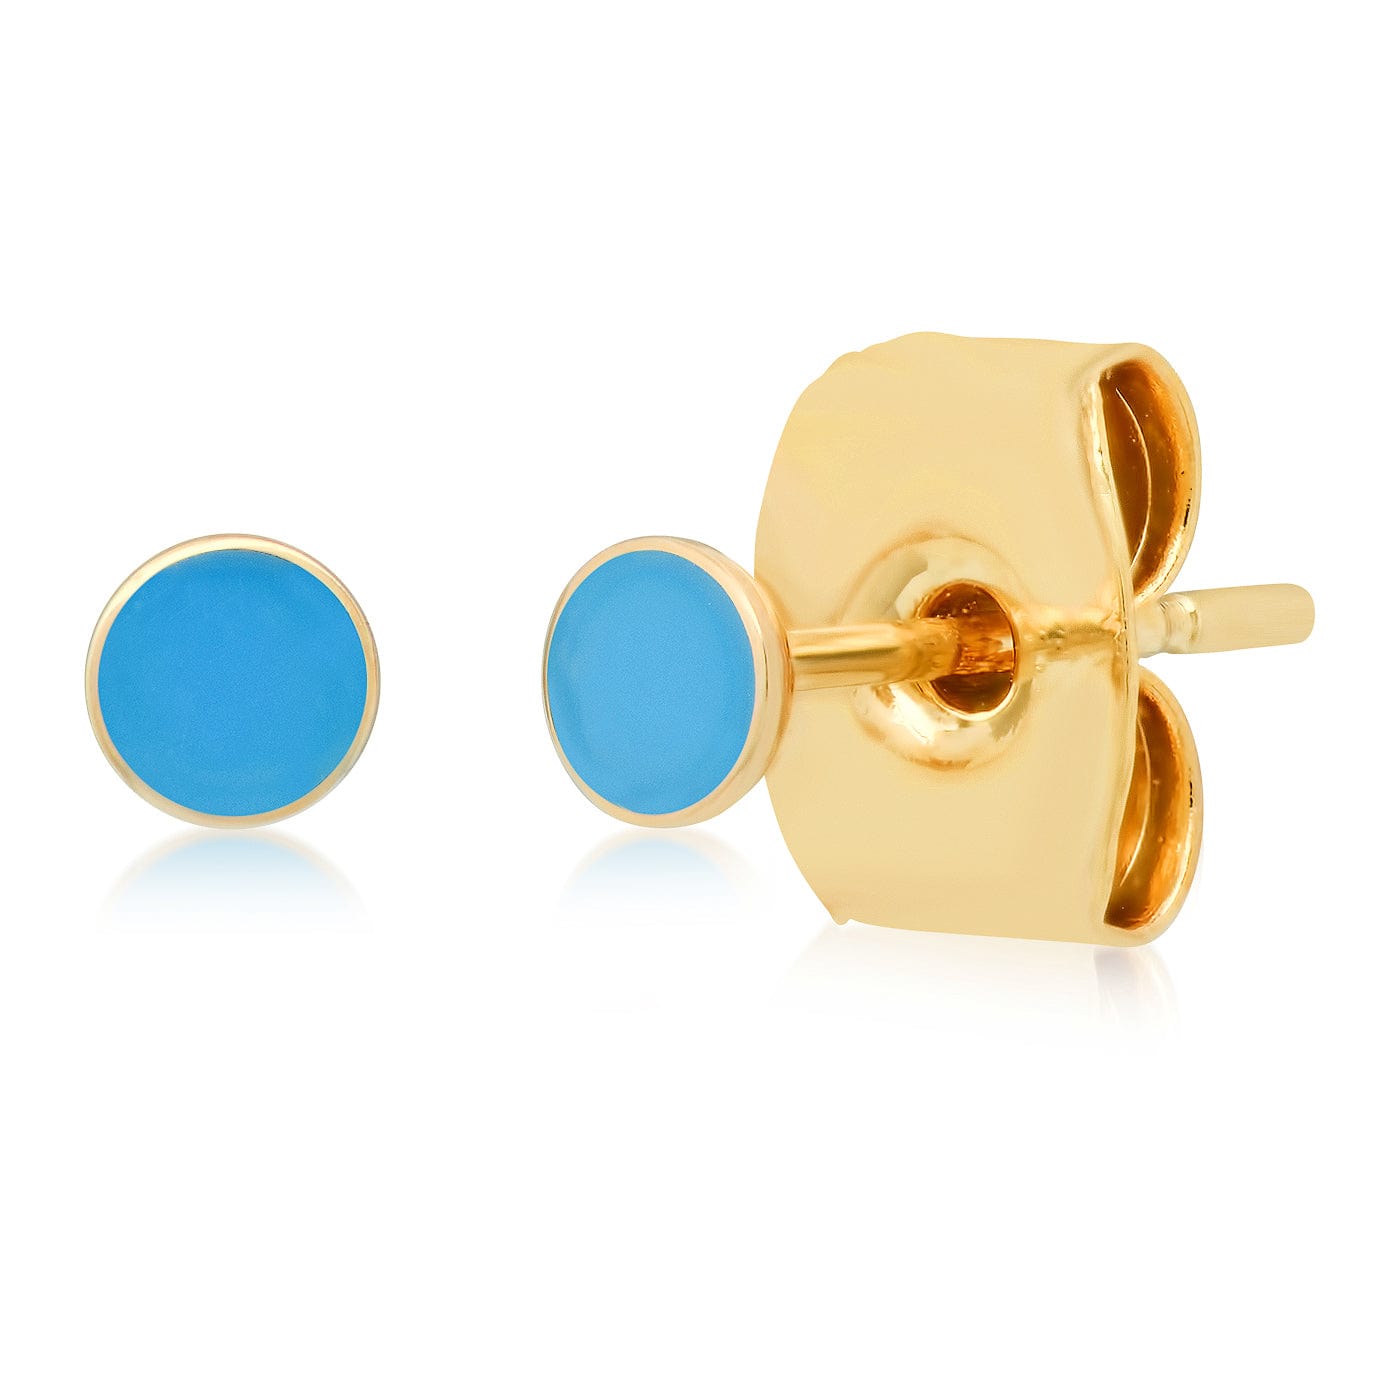 TAI JEWELRY Earrings Blue Enamel Round Disc Stud